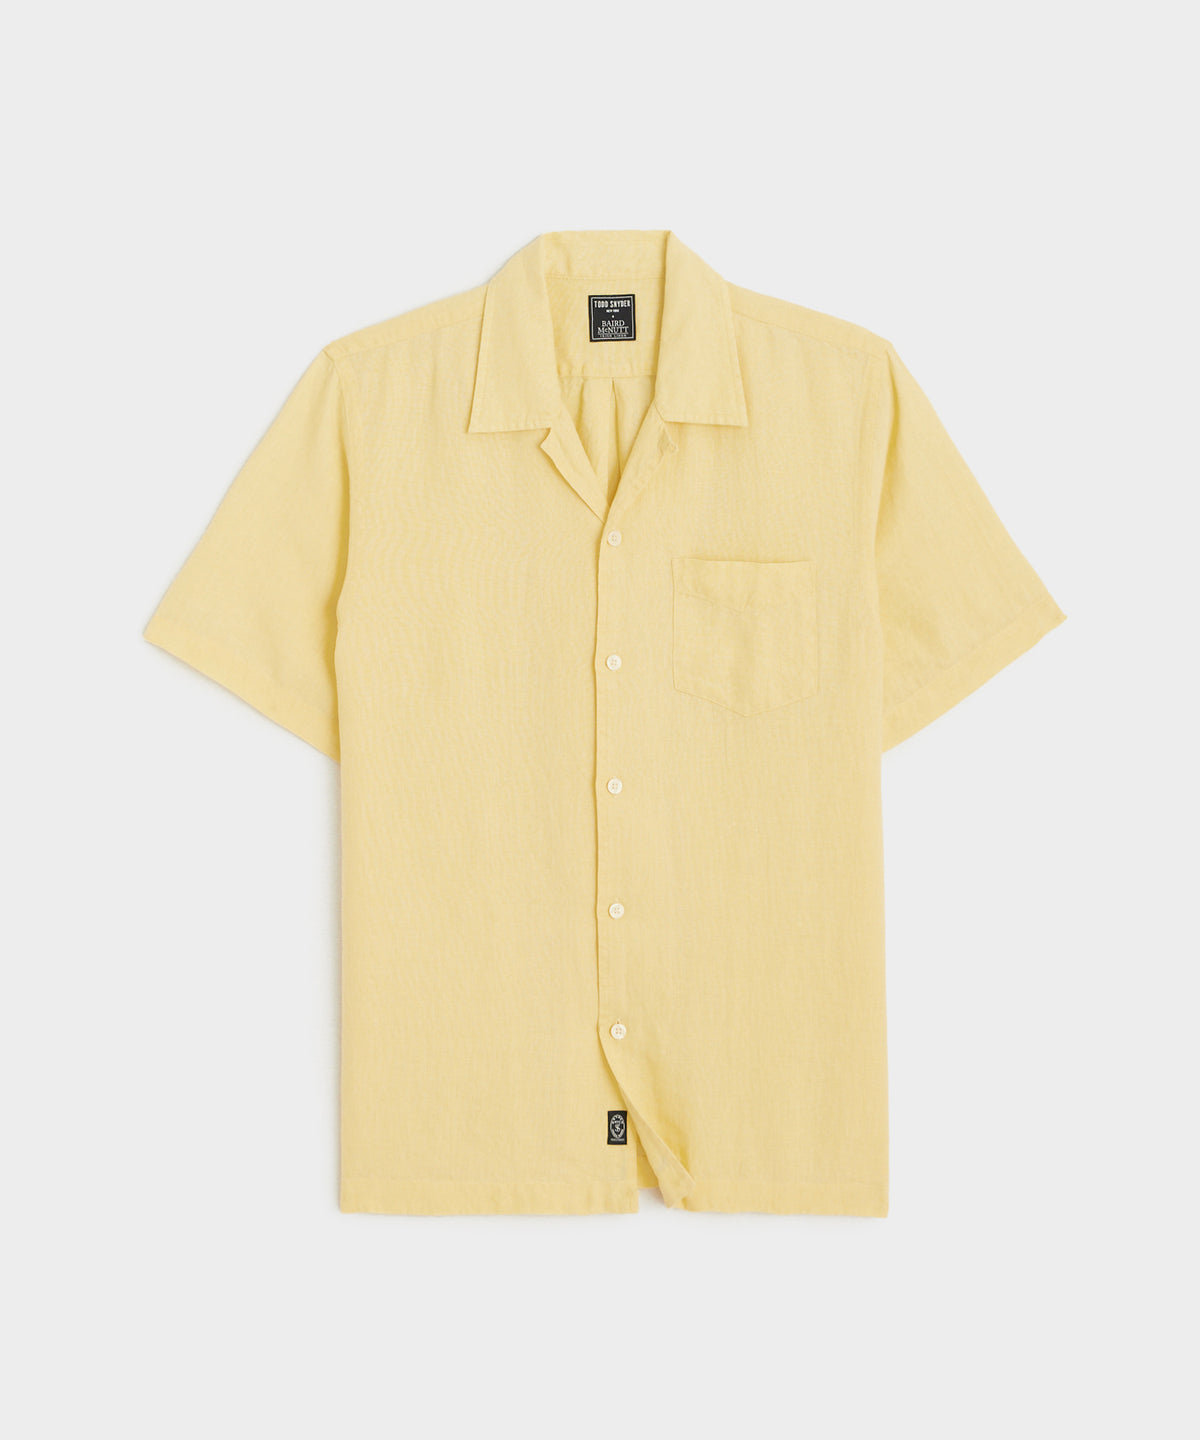 Sea Soft Irish Linen Camp Collar Shirt in Lemon